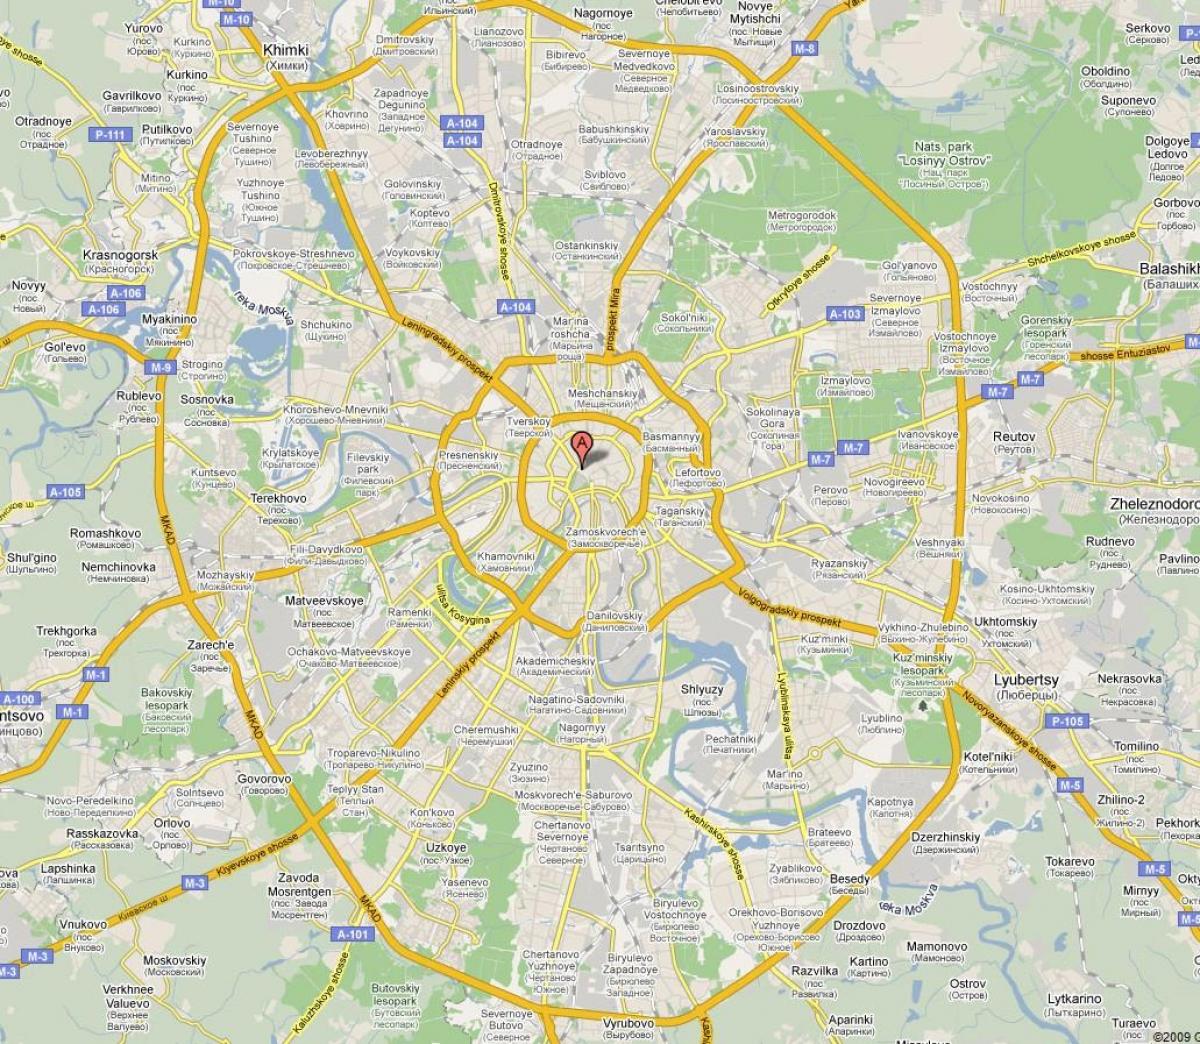 Moskva გარეუბანში რუკა